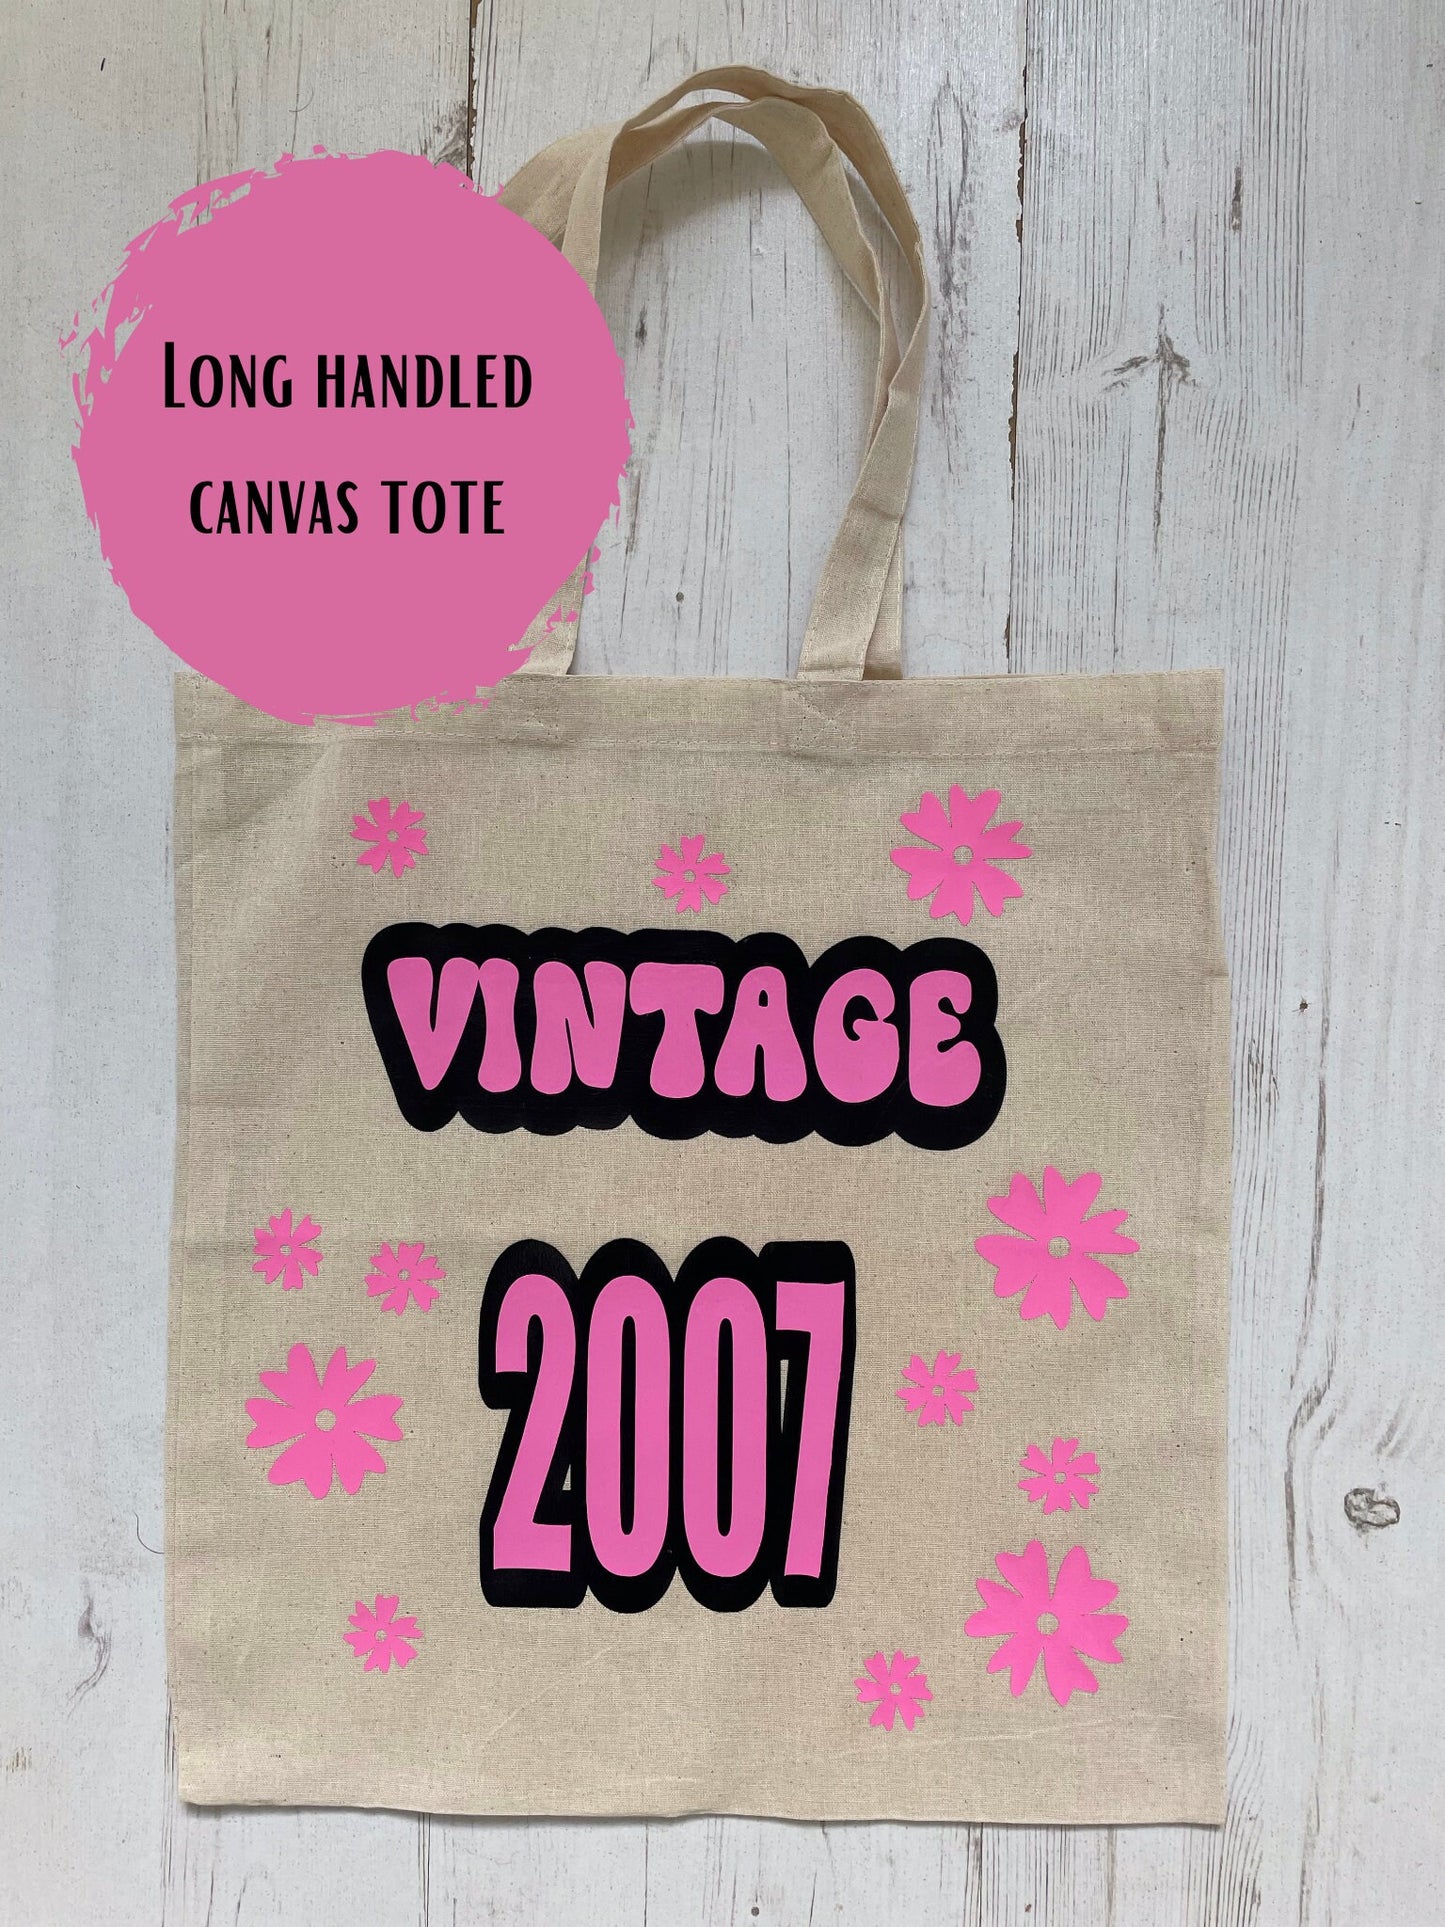 2007 Vintage Year Tote Bag